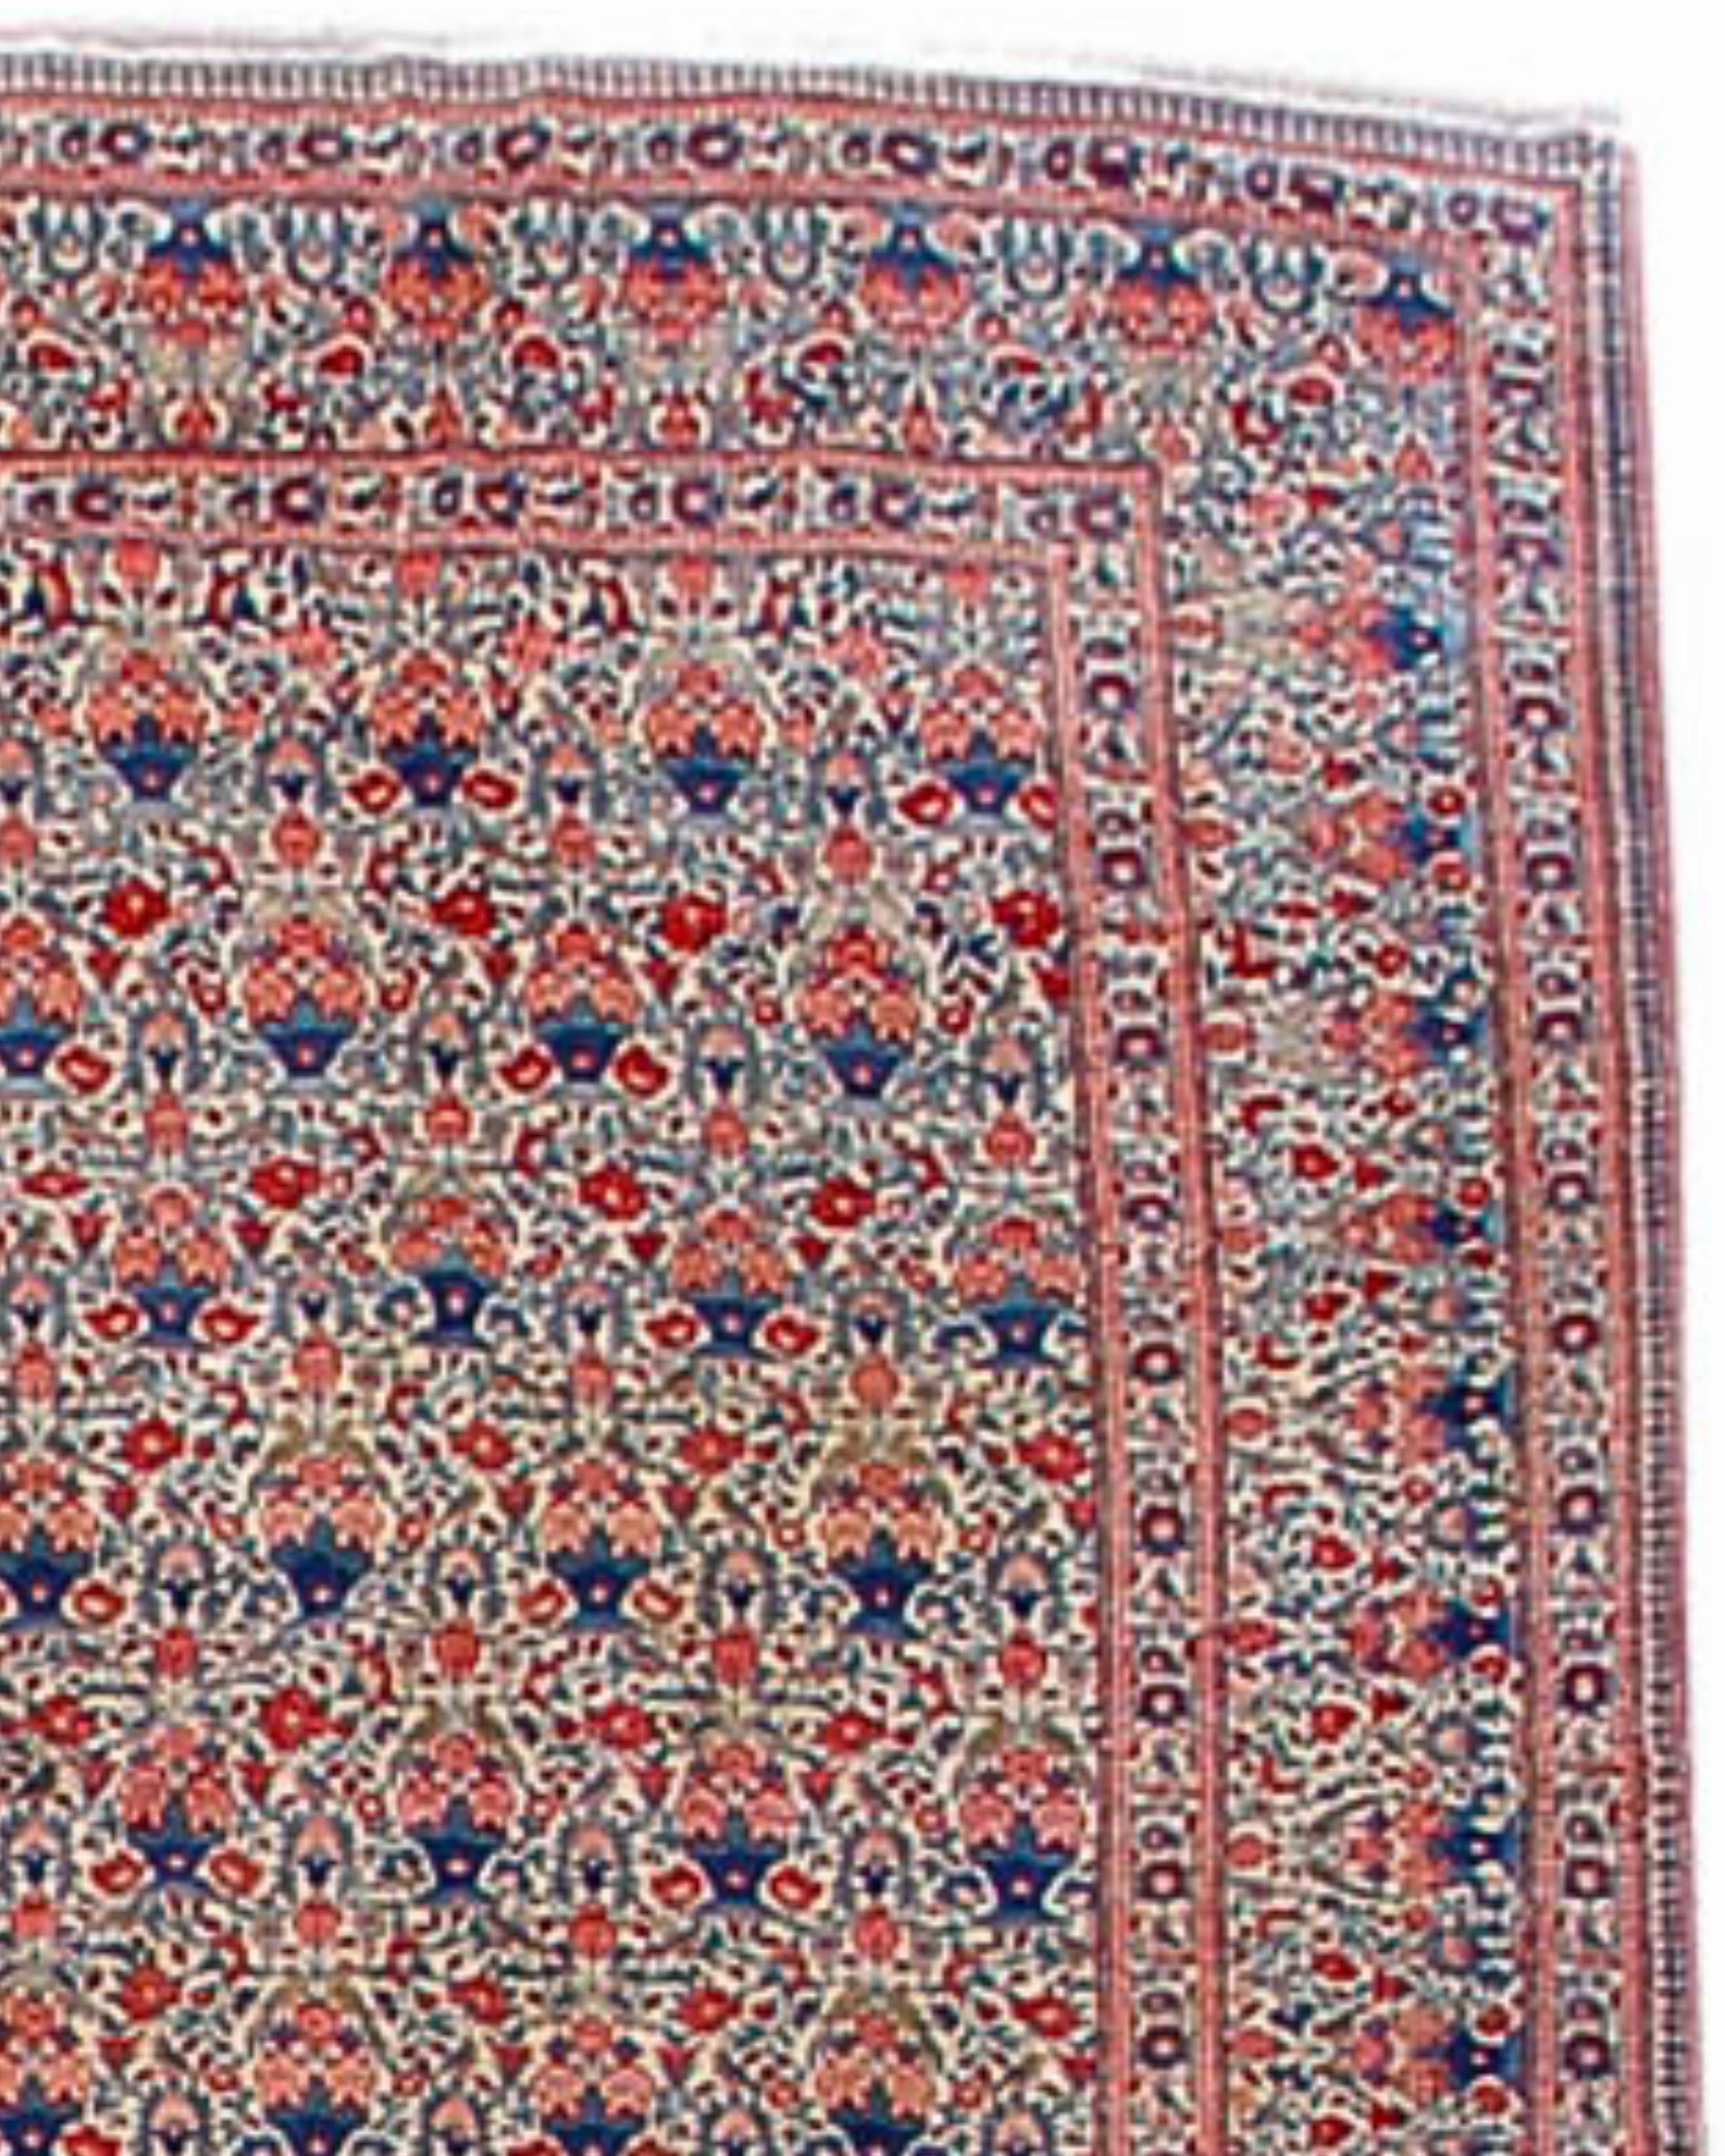 Ancien tapis persan de Téhéran, début du 20e siècle

Cet élégant tapis a été tissé dans les environs de Téhéran, la capitale de la Perse. Le champ et les bordures en ivoire sont remplis de grappes de roses en pot, une fleur qui a une signification